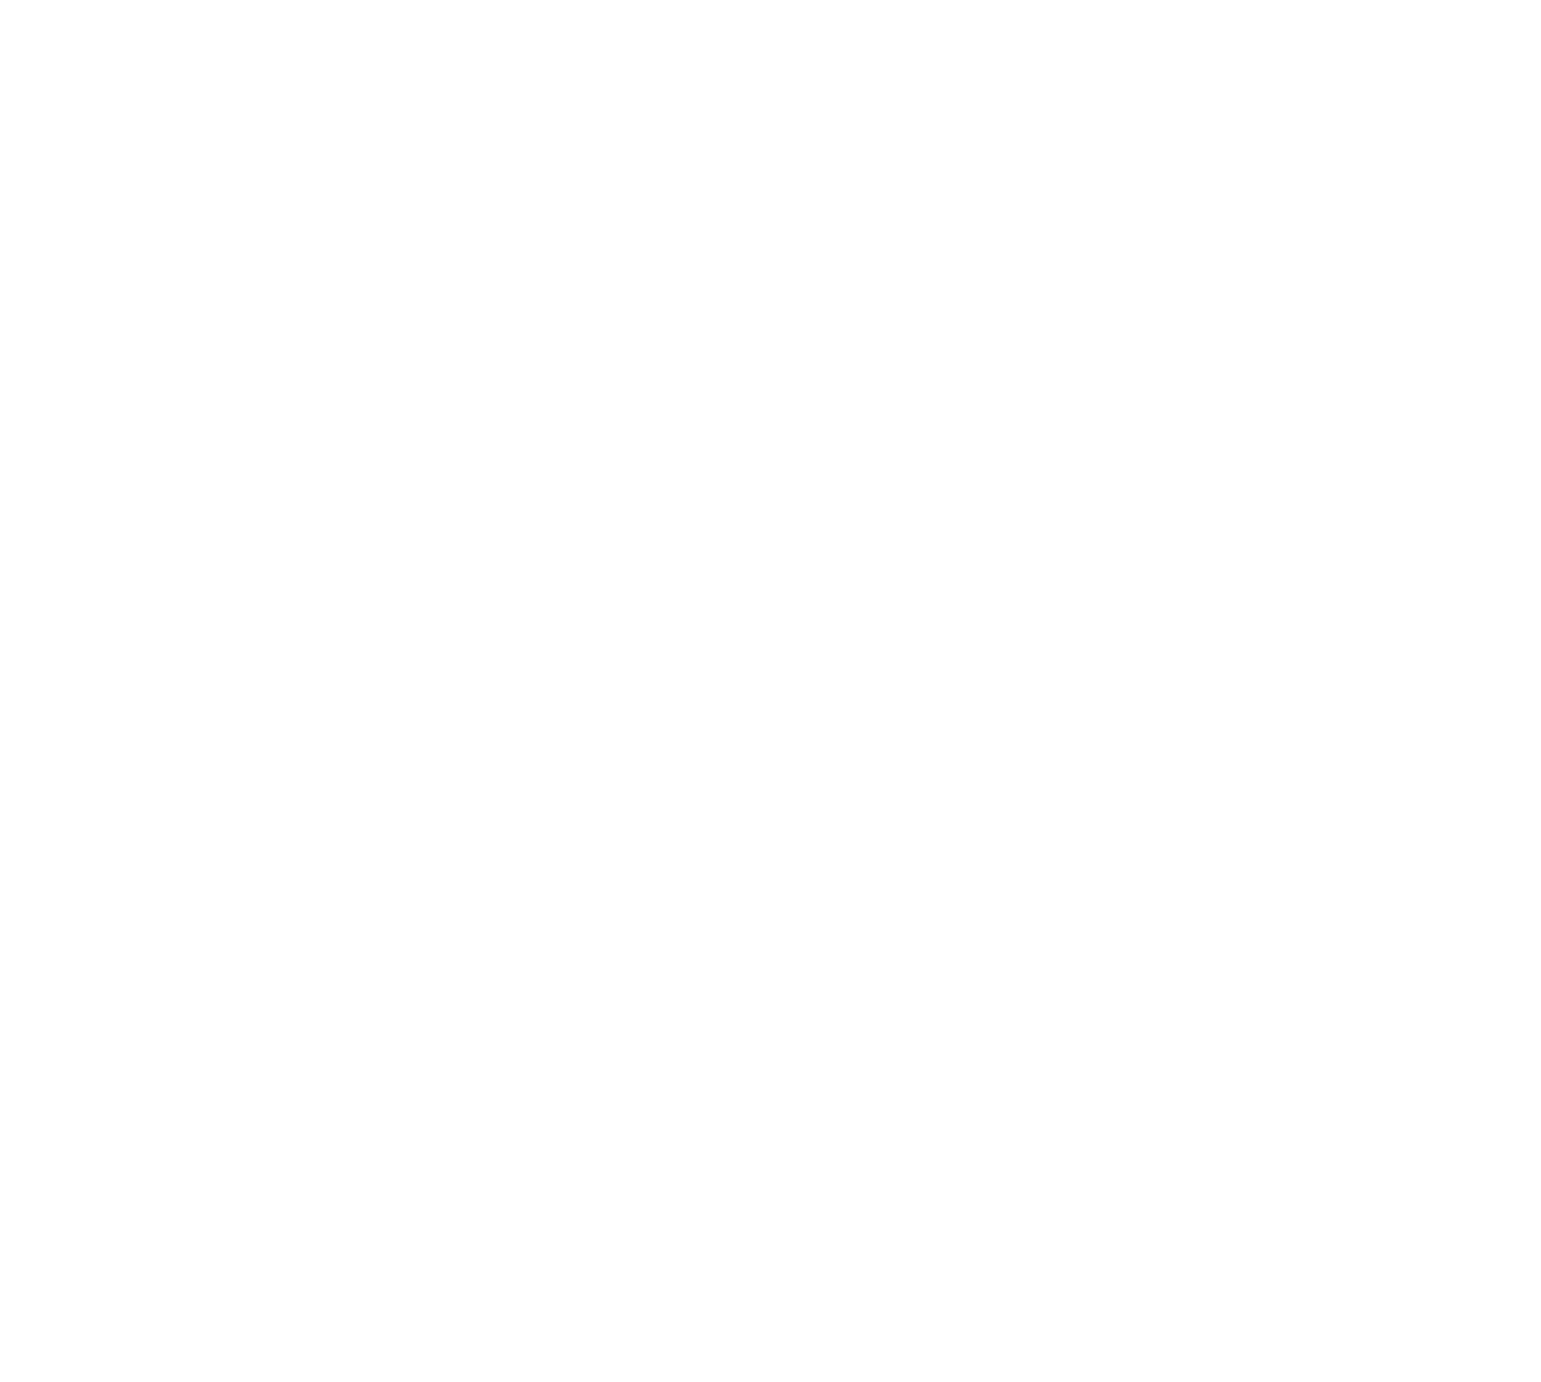 TriSalus Life Sciences logo pour fonds sombres (PNG transparent)